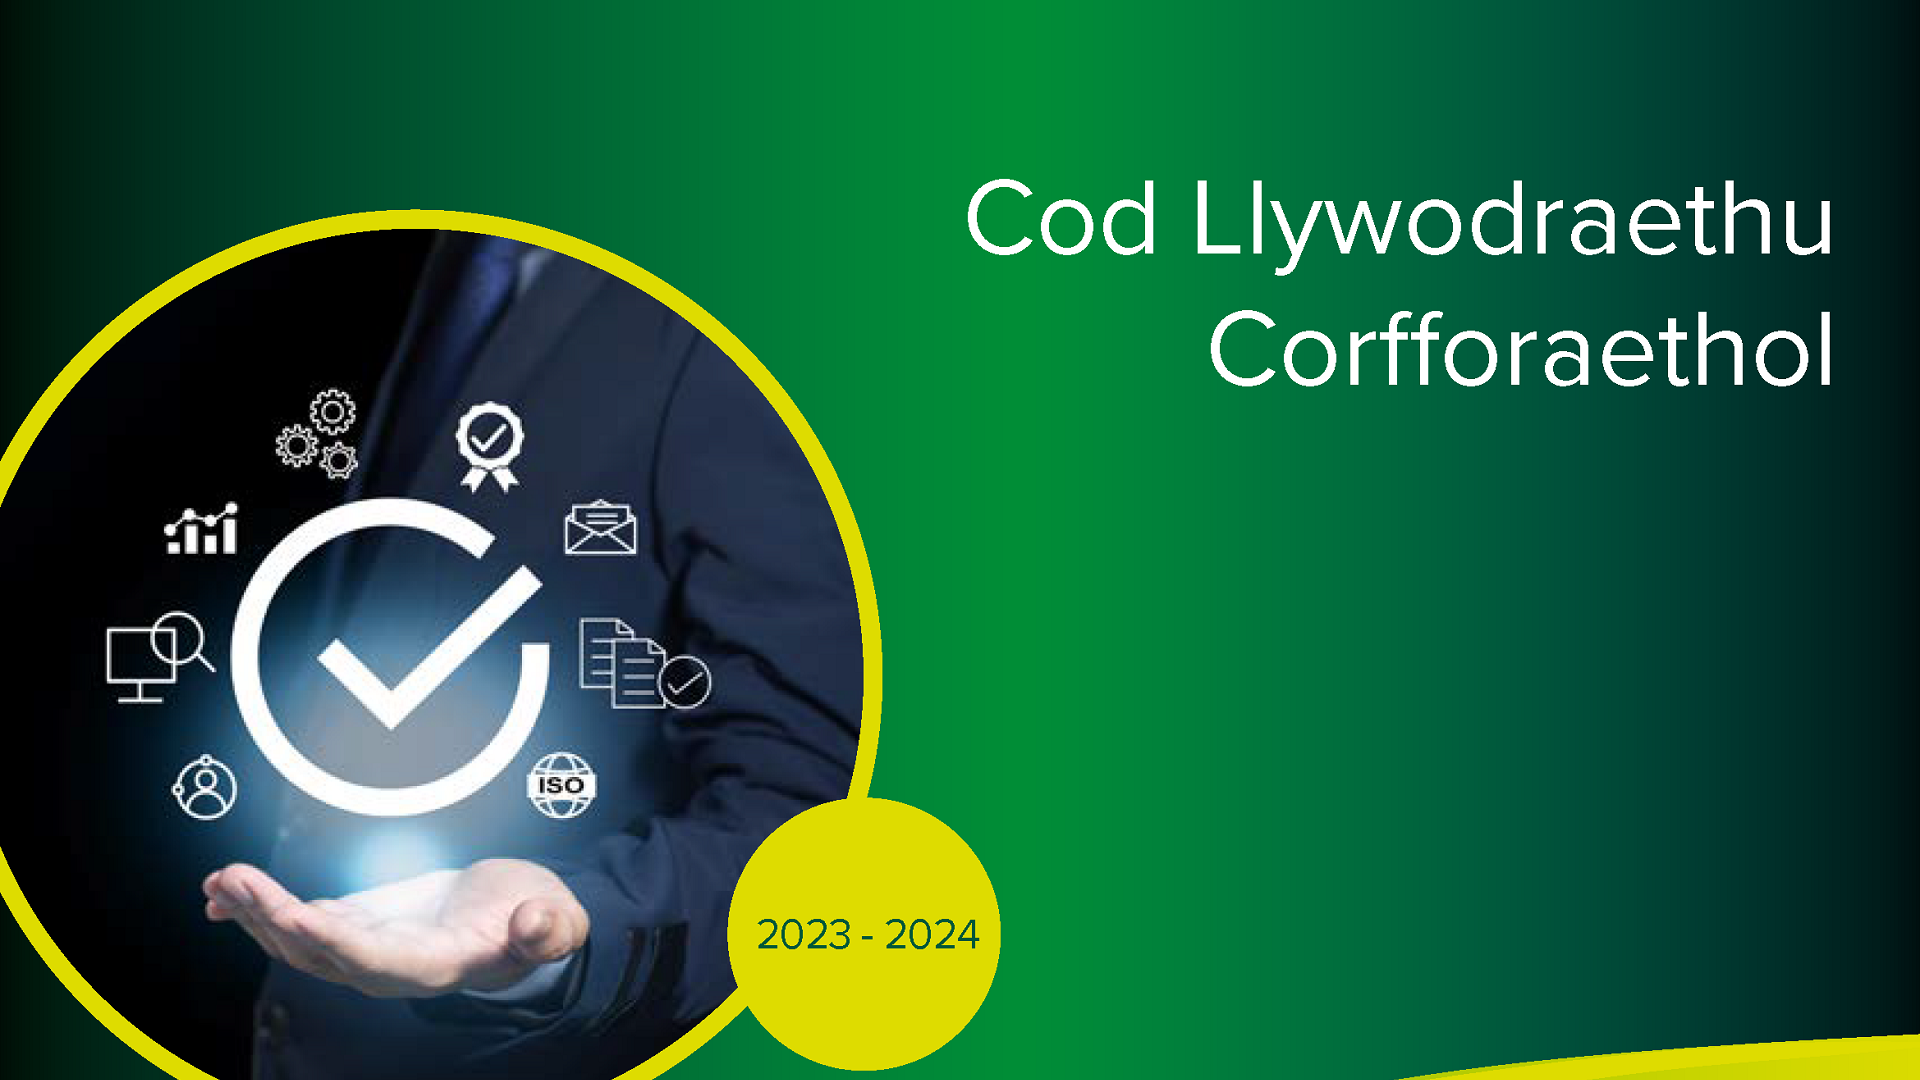 Cod Llywodraethu Corfforaethol